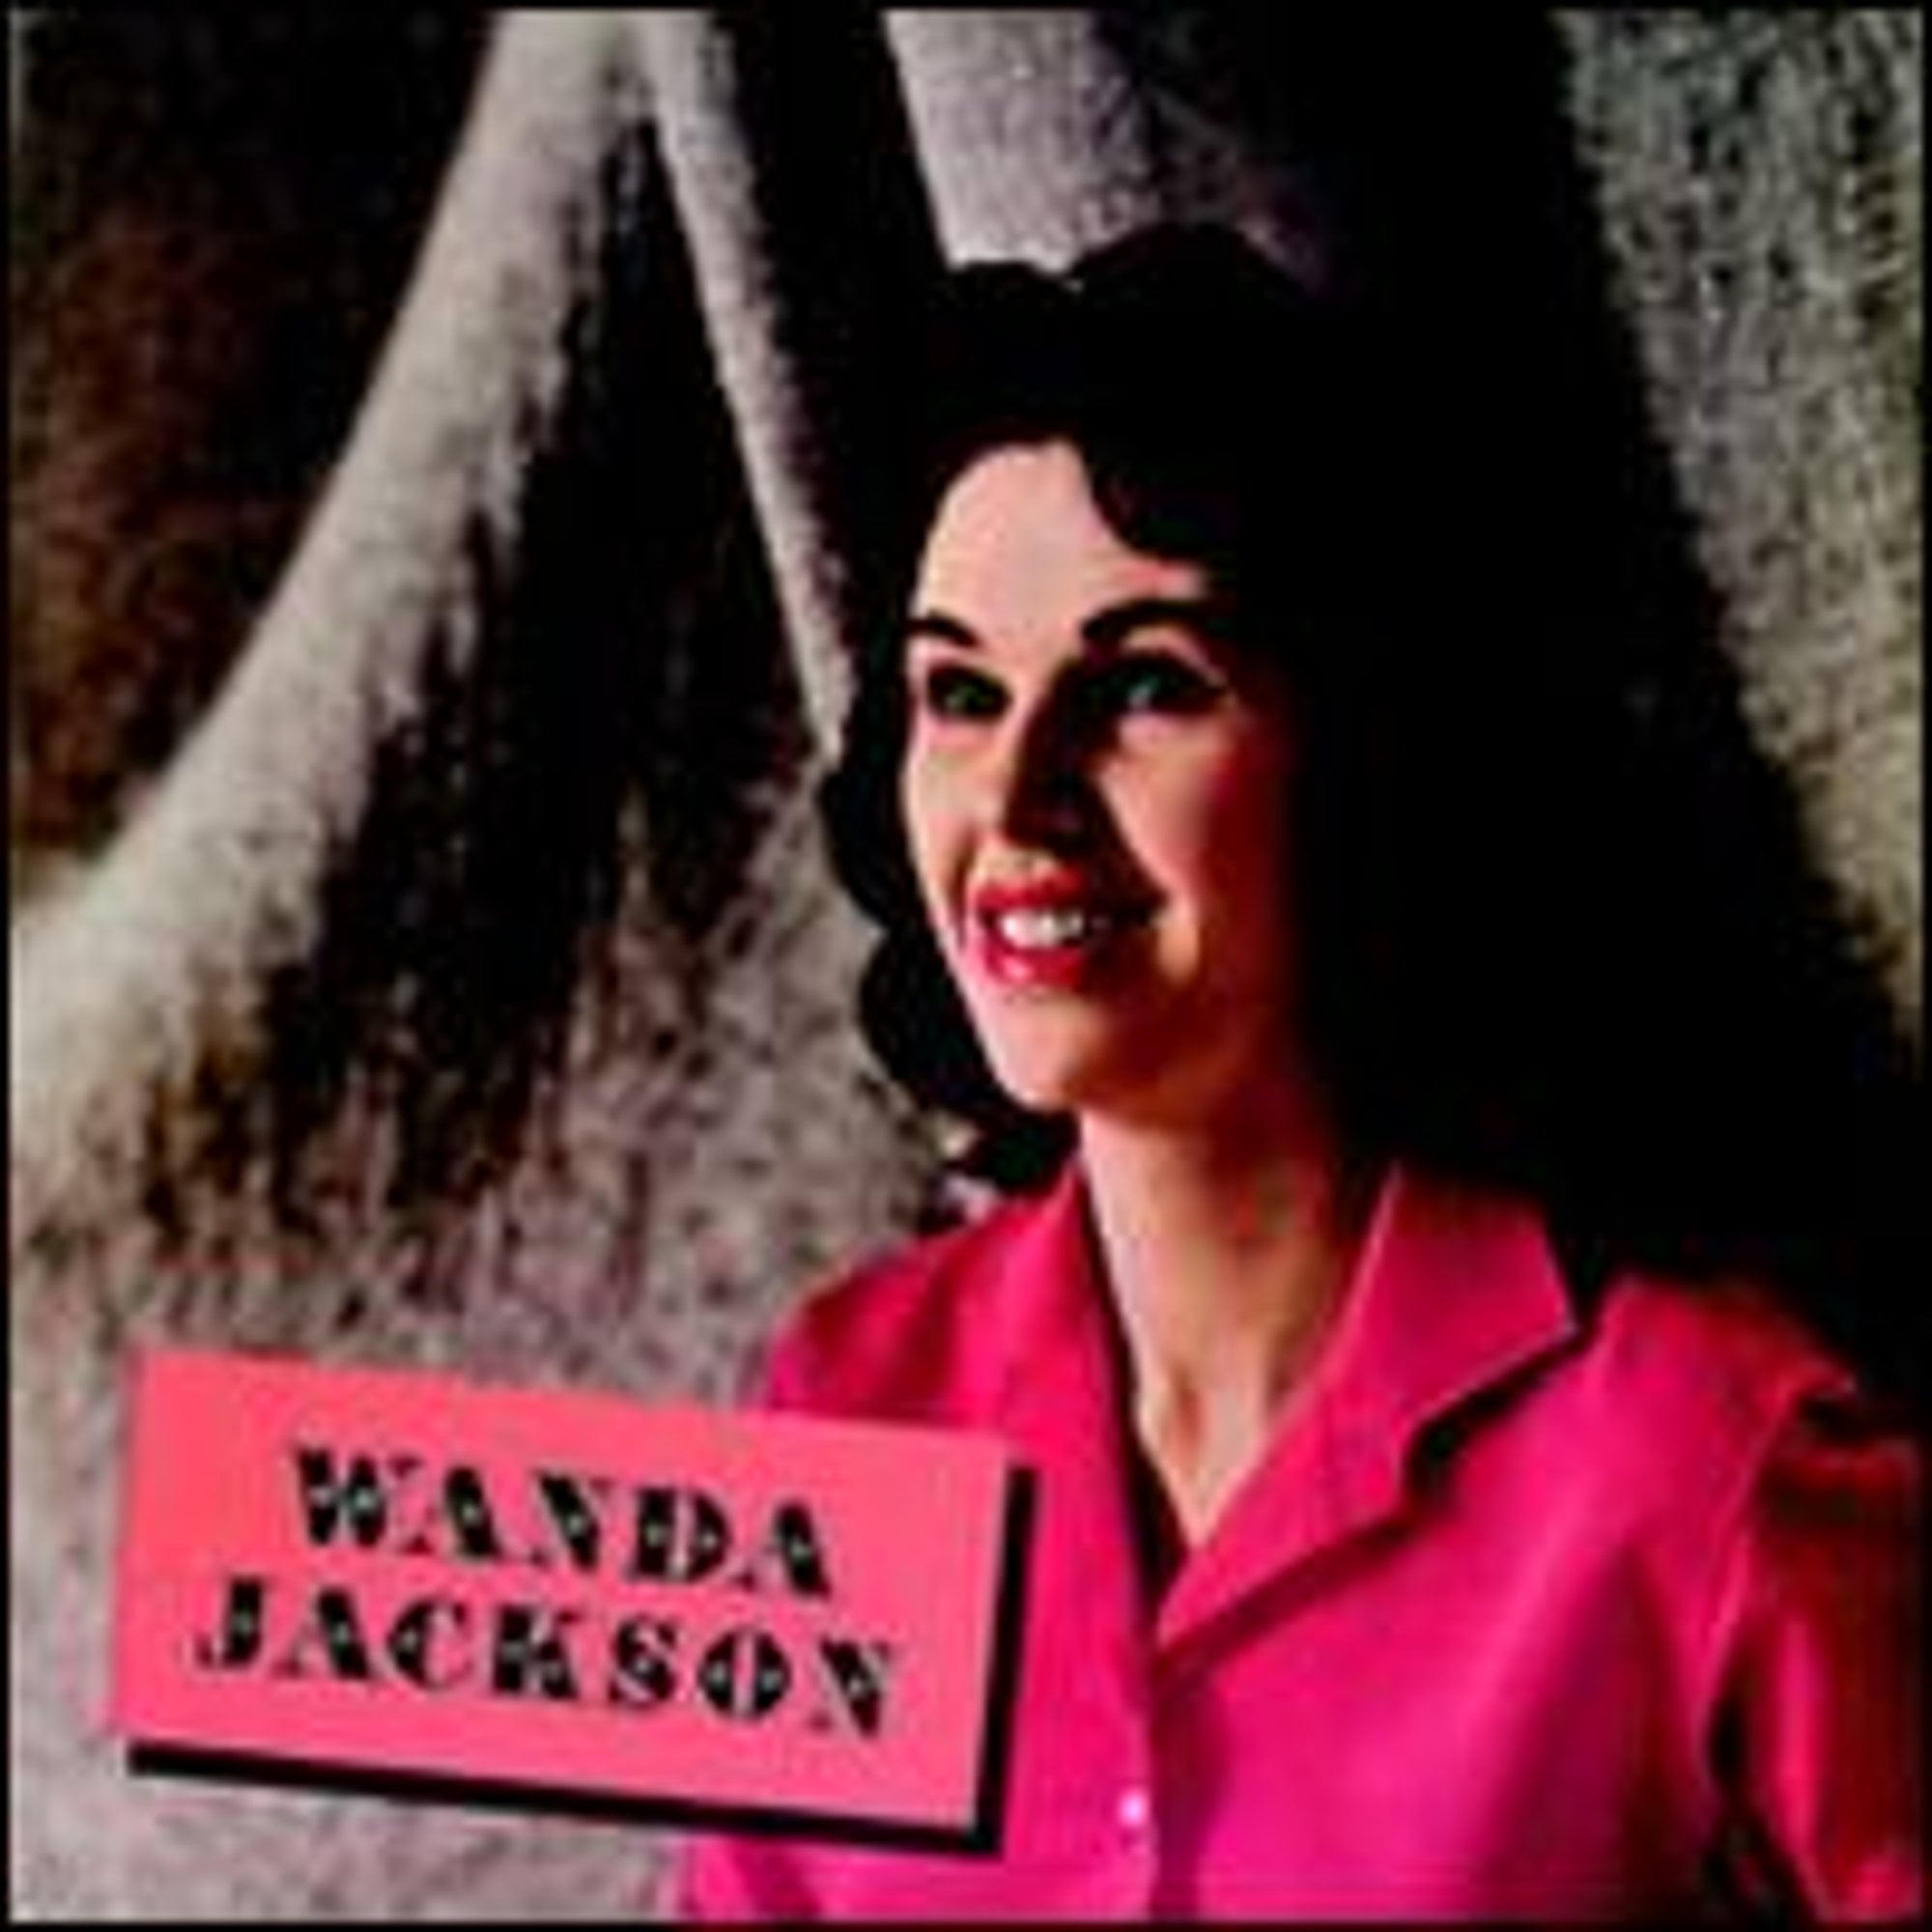 Wanda Jackson [Bonus Tracks] (Pre-Owned CD 0724354068225) by Wanda ...